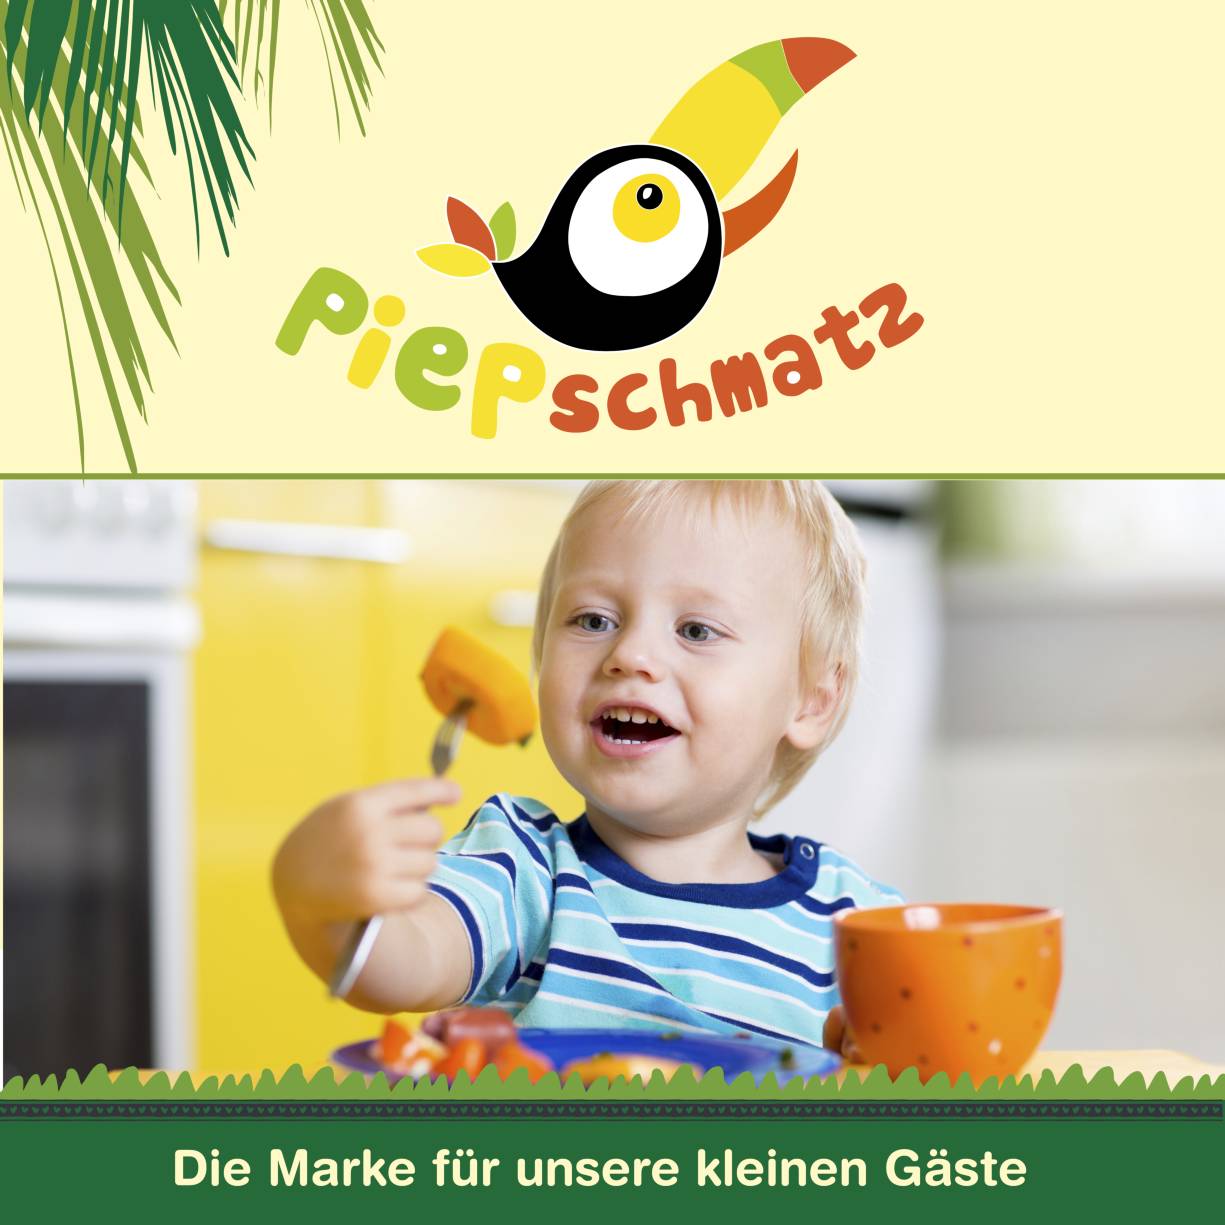 Piepschmatz - dieMarke fuer unsere kleinen Gaeste: noch einmal das Piepschmatz-Logo in groß  und ein fröhliches Kitakind mit Möhre auf der gabel